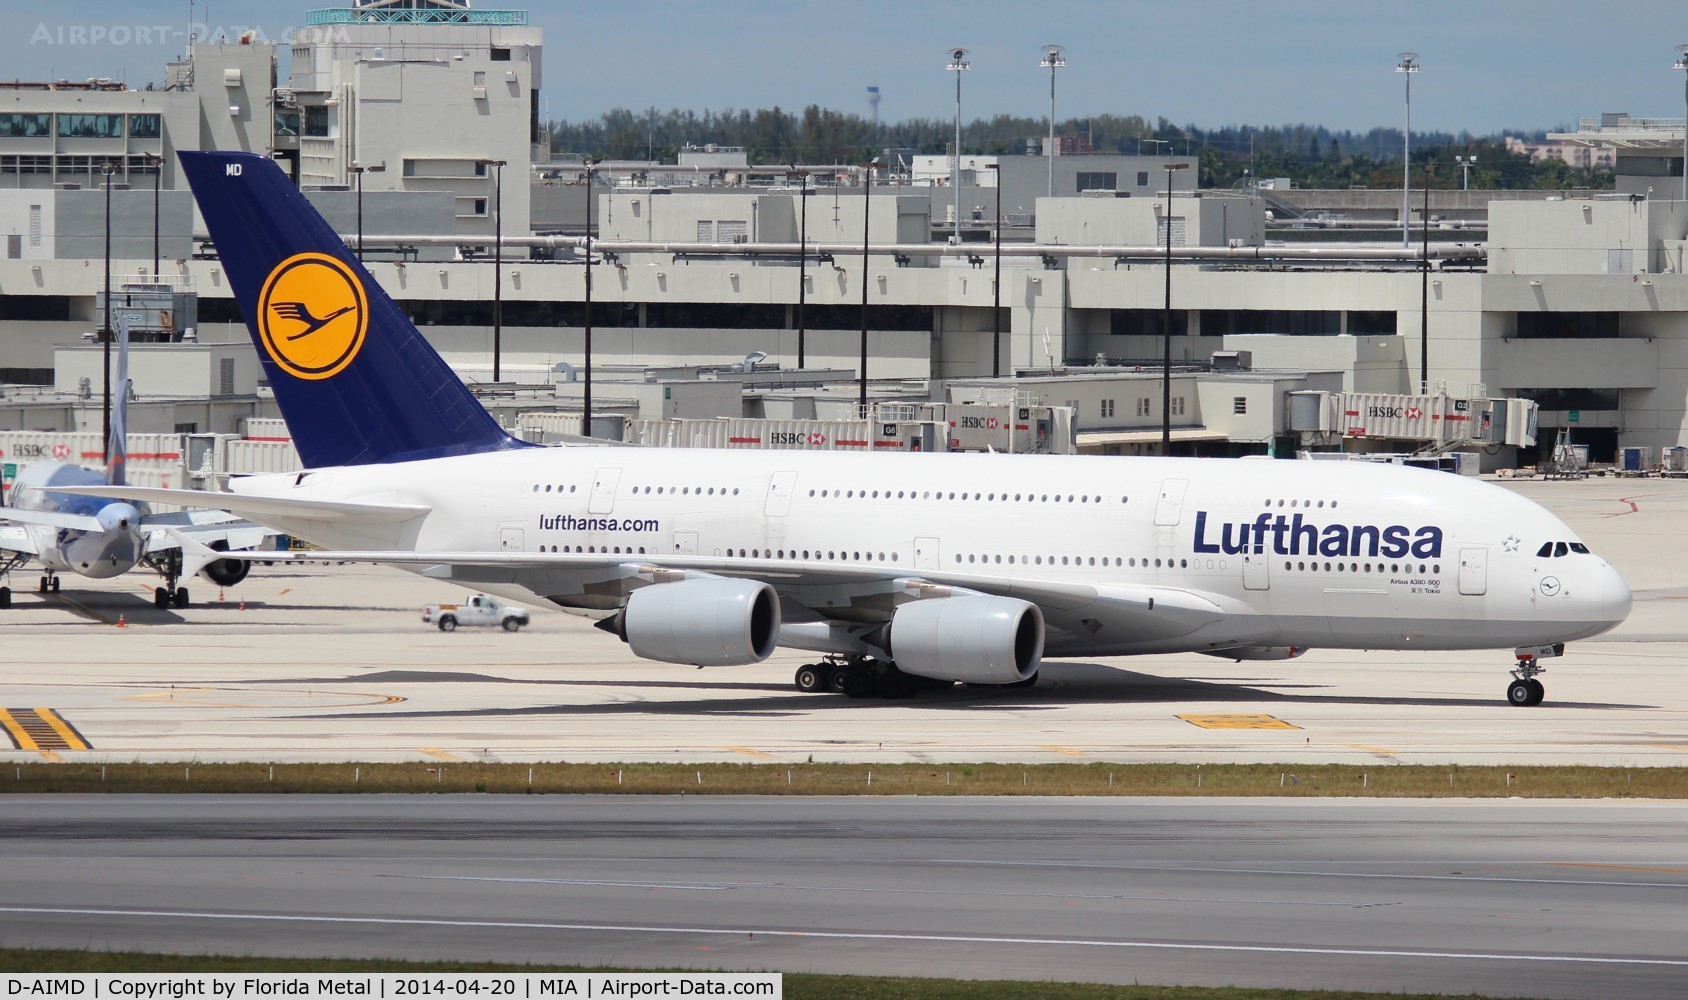 D-AIMD, 2010 Airbus A380-841 C/N 048, Lufthansa